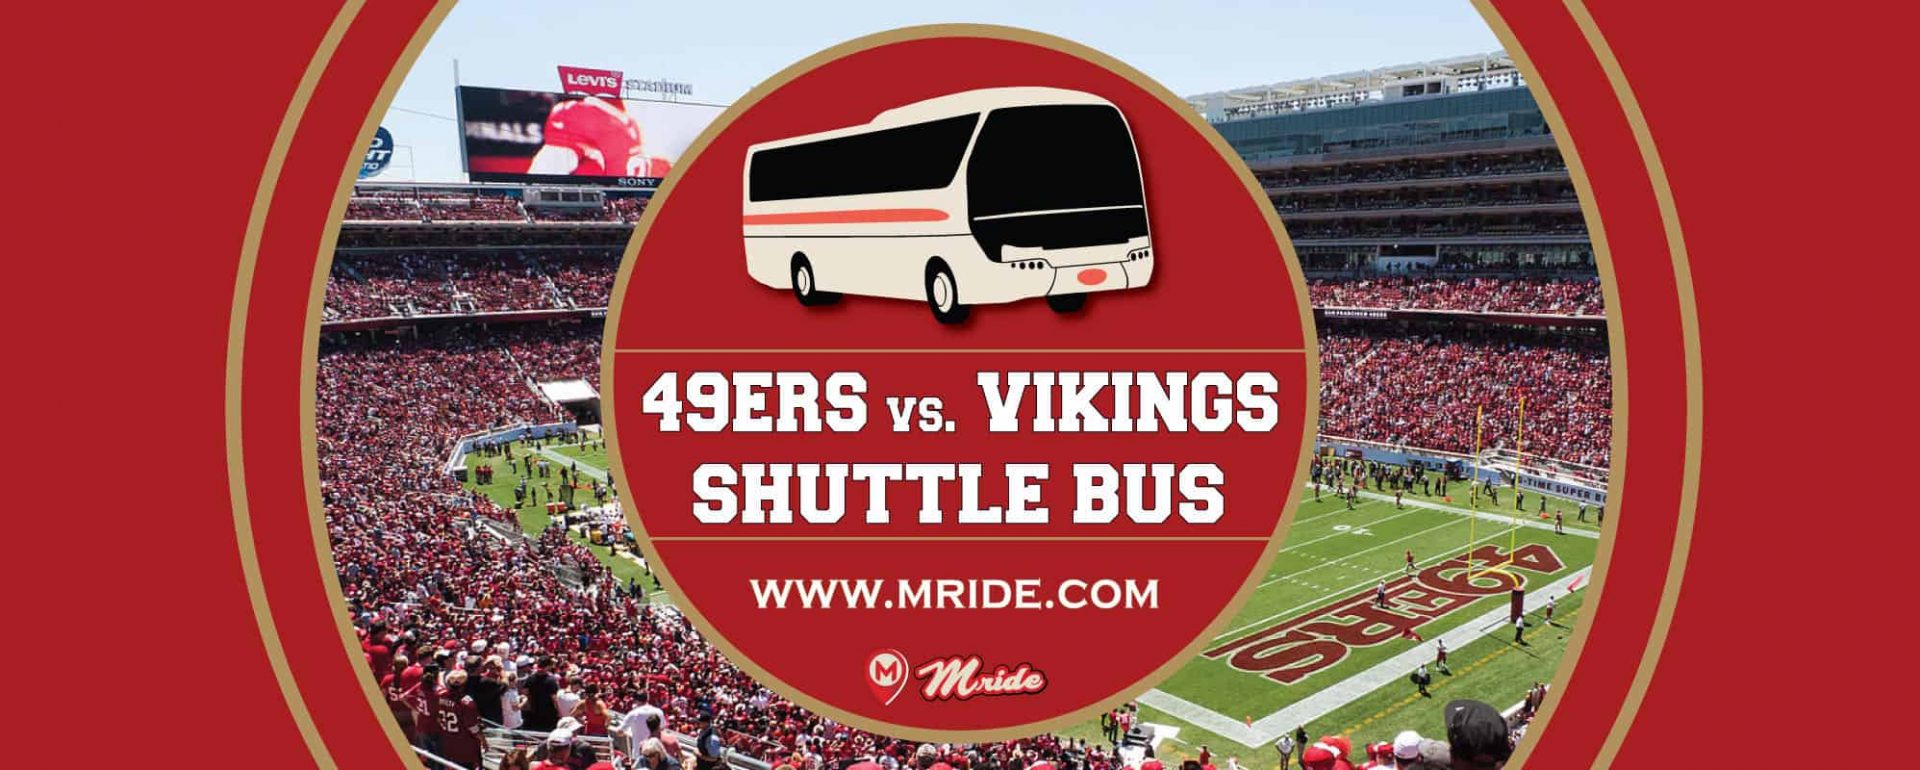 49ers vs. Vikings Shuttle Bus